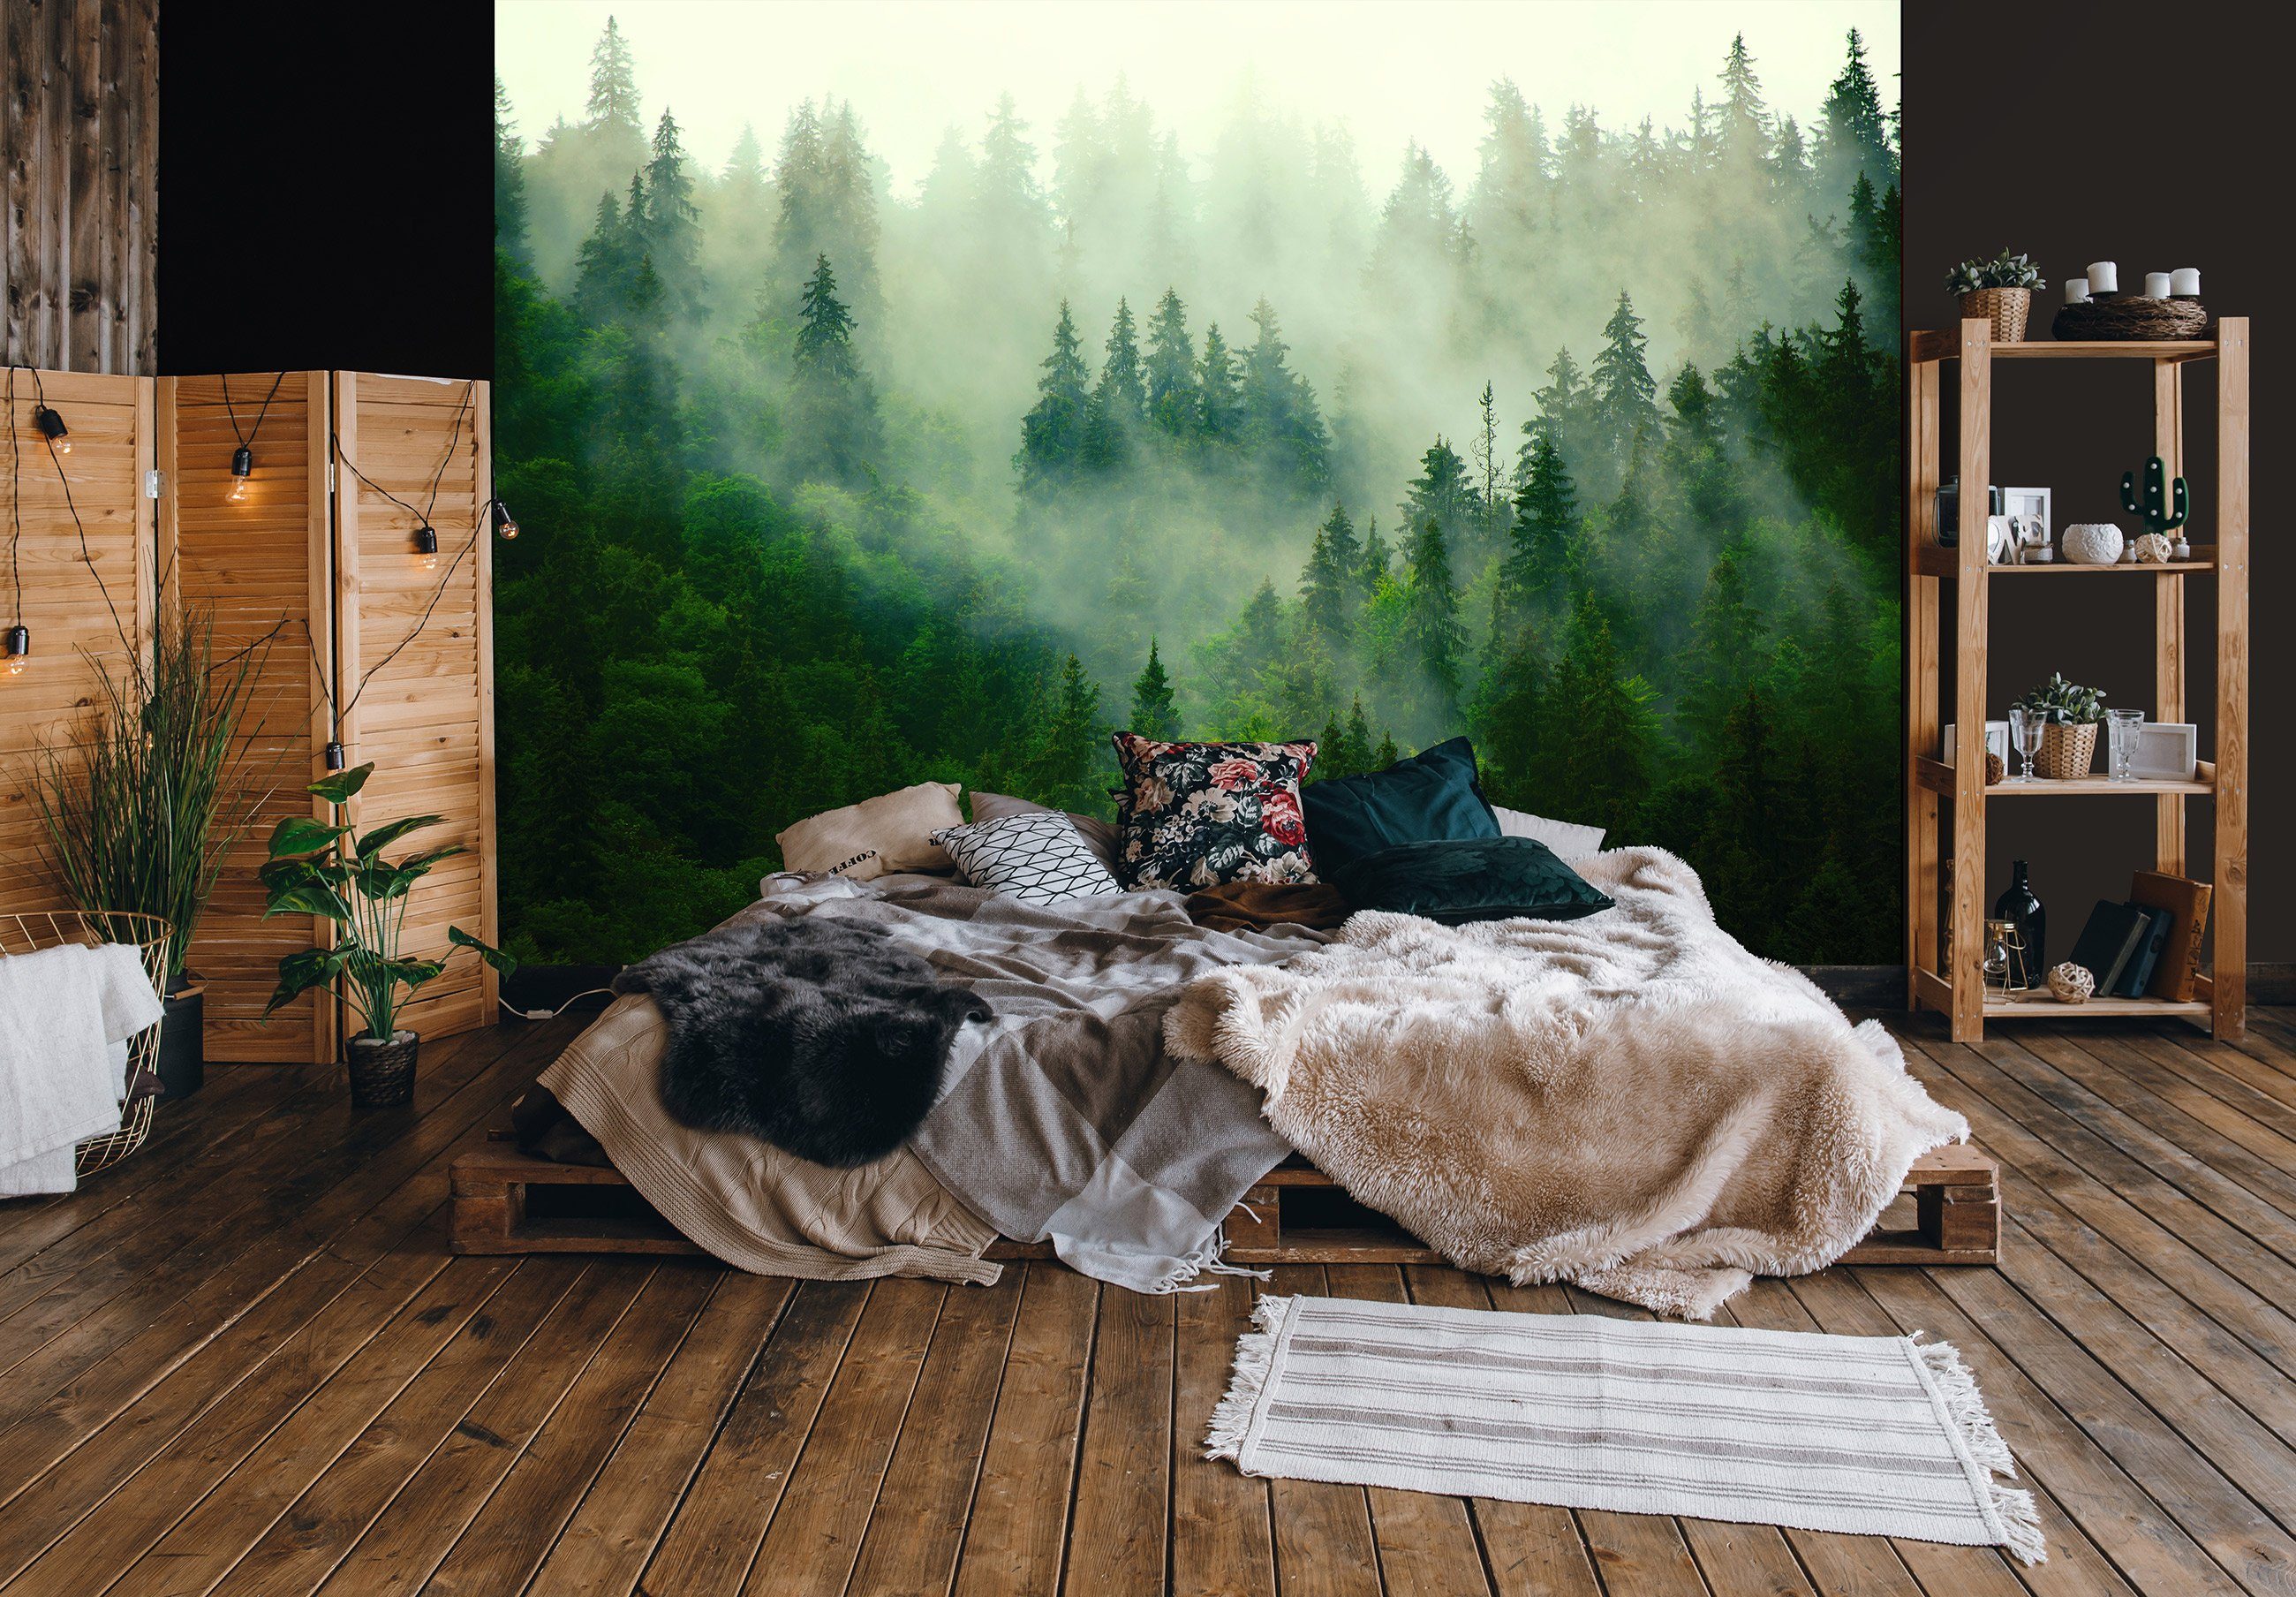 Kleister Glatt, oder inklusive EFFEKT Nebel Tapete Vliestapete 3D im Wandtapete Vliestapete Wald Wallarena Natur Fototapete Wohnzimmer Motivtapete, Wald, Vlies für Schlafzimmer